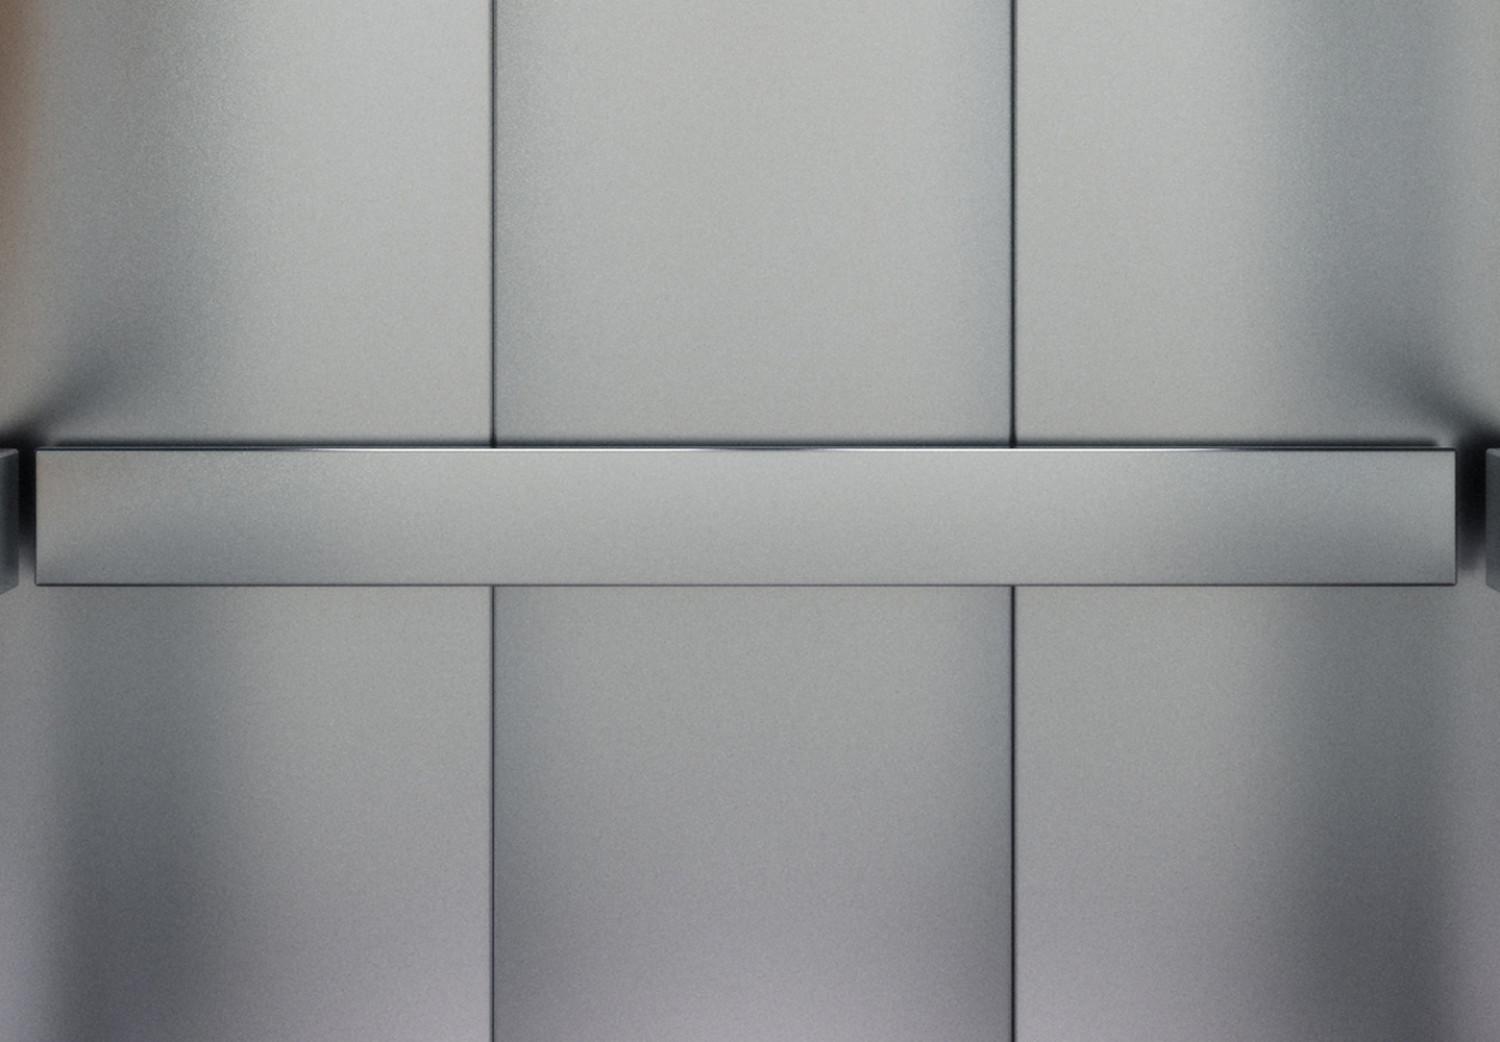 Cuadro moderno Ascensor moderno - fotografía de arquitectura de oficina en gris